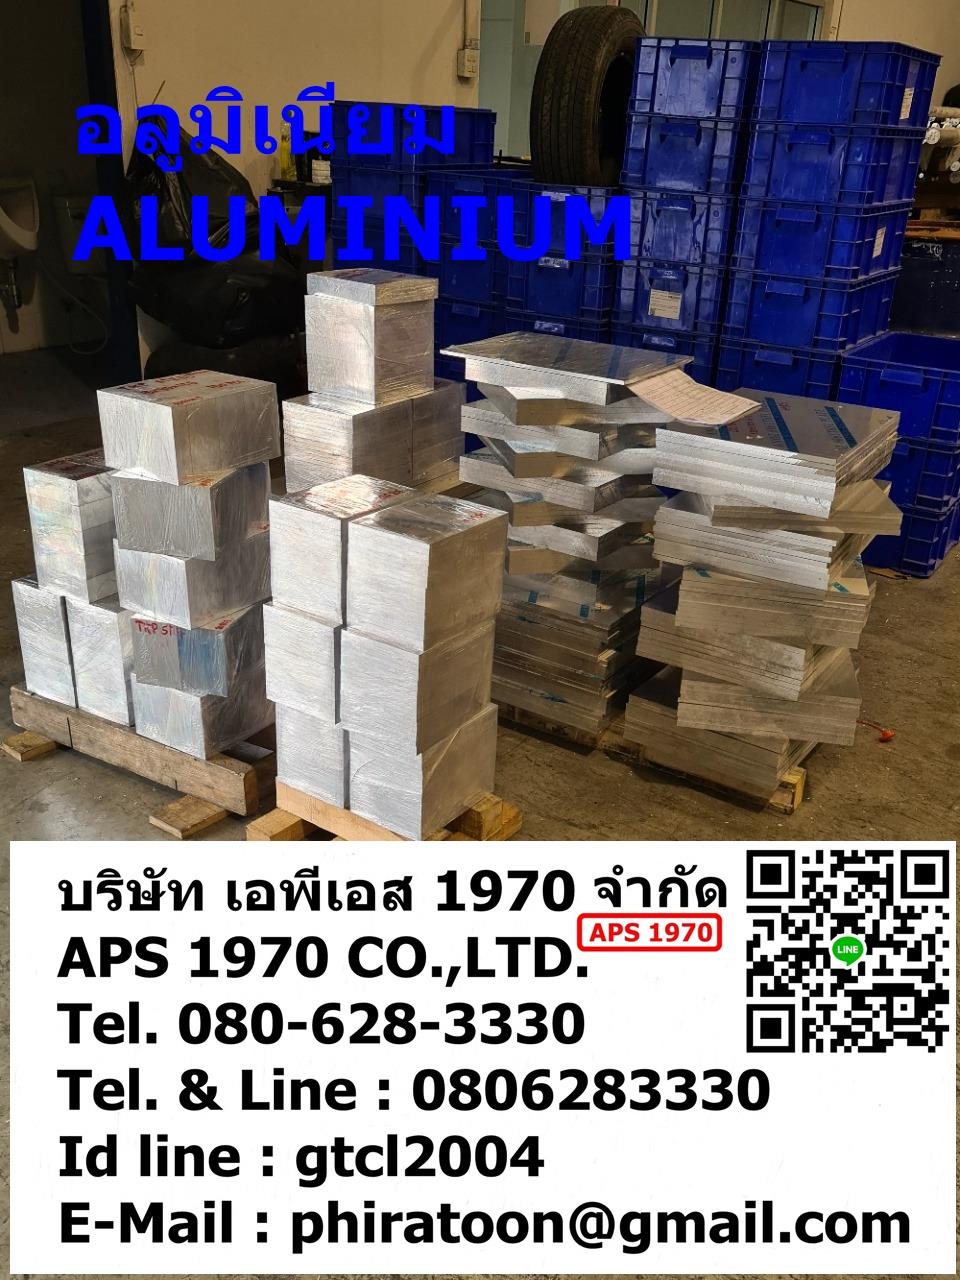 Aluminum7075 , Aluminum , A7075 , Aluminium7075 , 7075 ,อลูมิเนียมแผ่น7075 , อลูมิเนียม7075 , อลูมิเนียมแผ่นเกรด7075,Aluminum7075 , Aluminum , A7075 , Aluminium7075 , 7075 ,อลูมิเนียมแผ่น7075 , อลูมิเนียม7075 , อลูมิเนียมแผ่นเกรด7075,,Metals and Metal Products/Aluminum